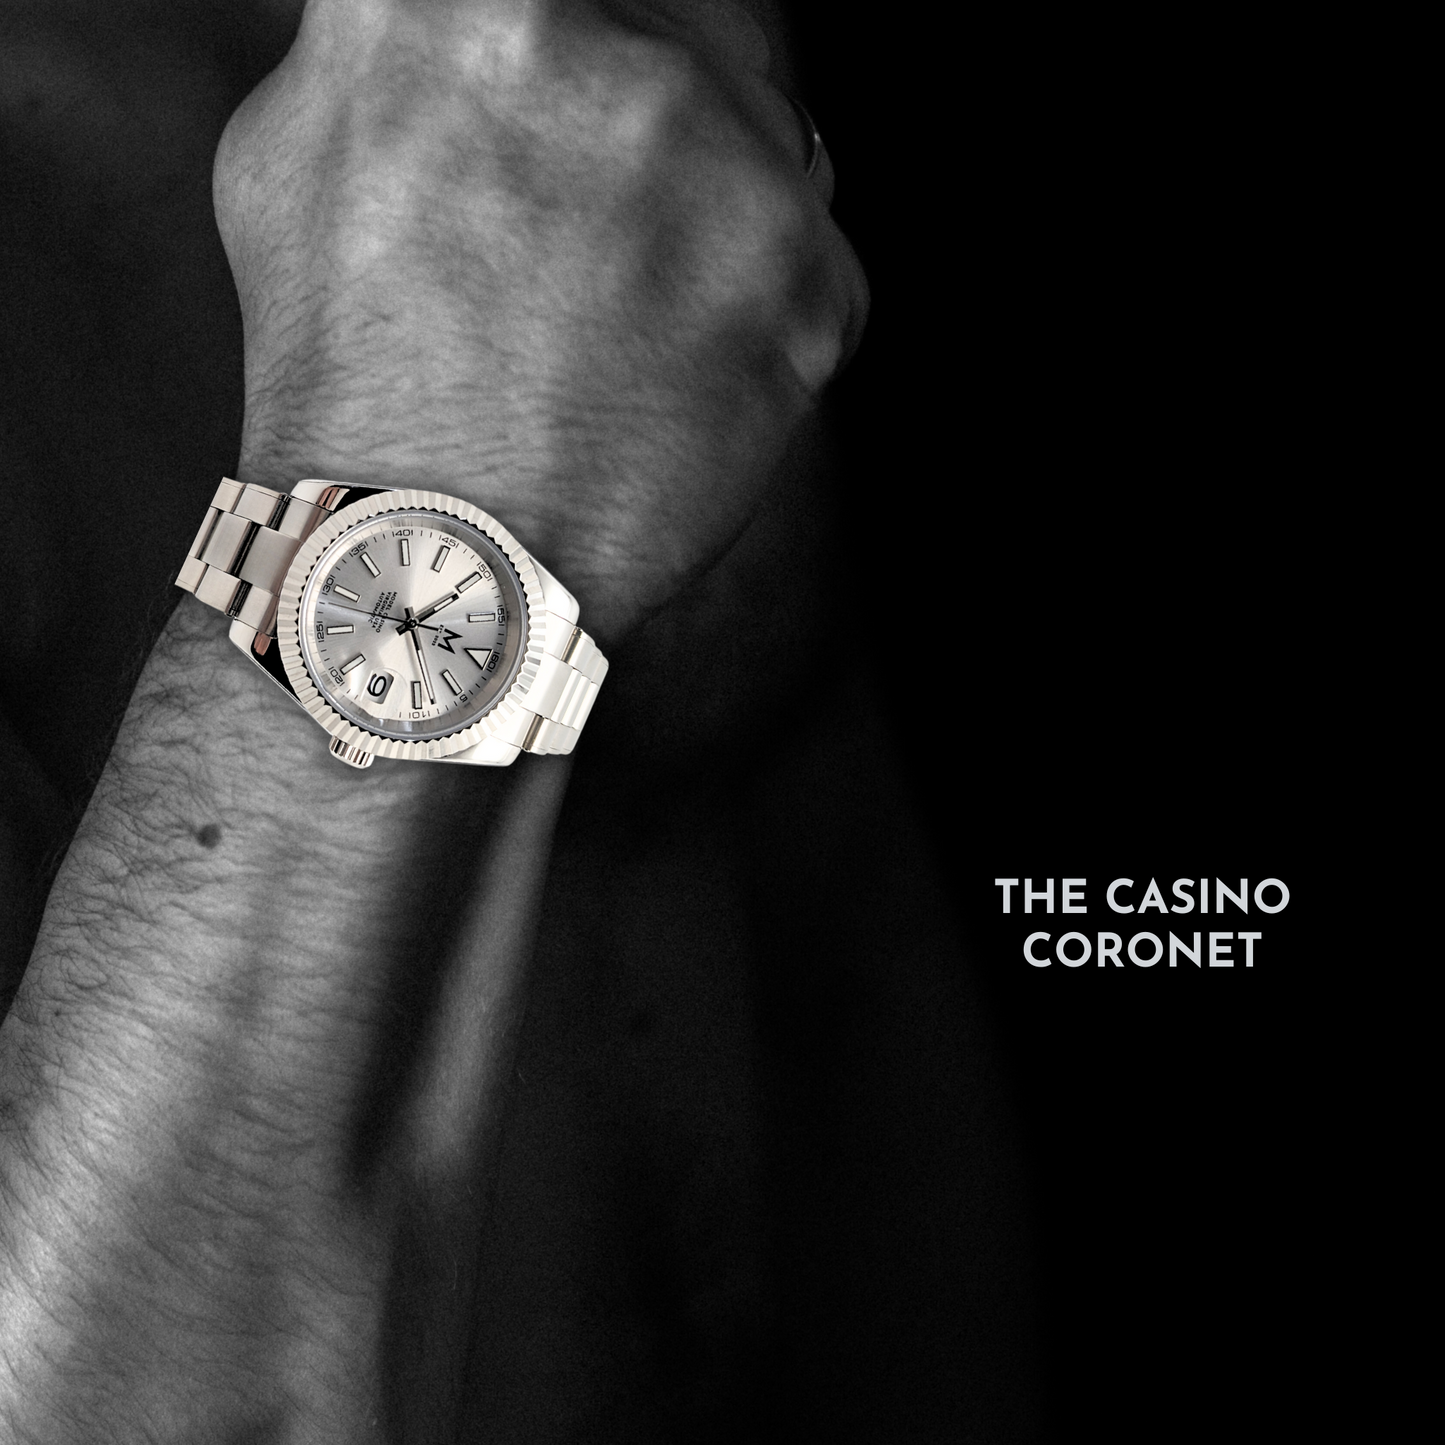 The Casino Coronet